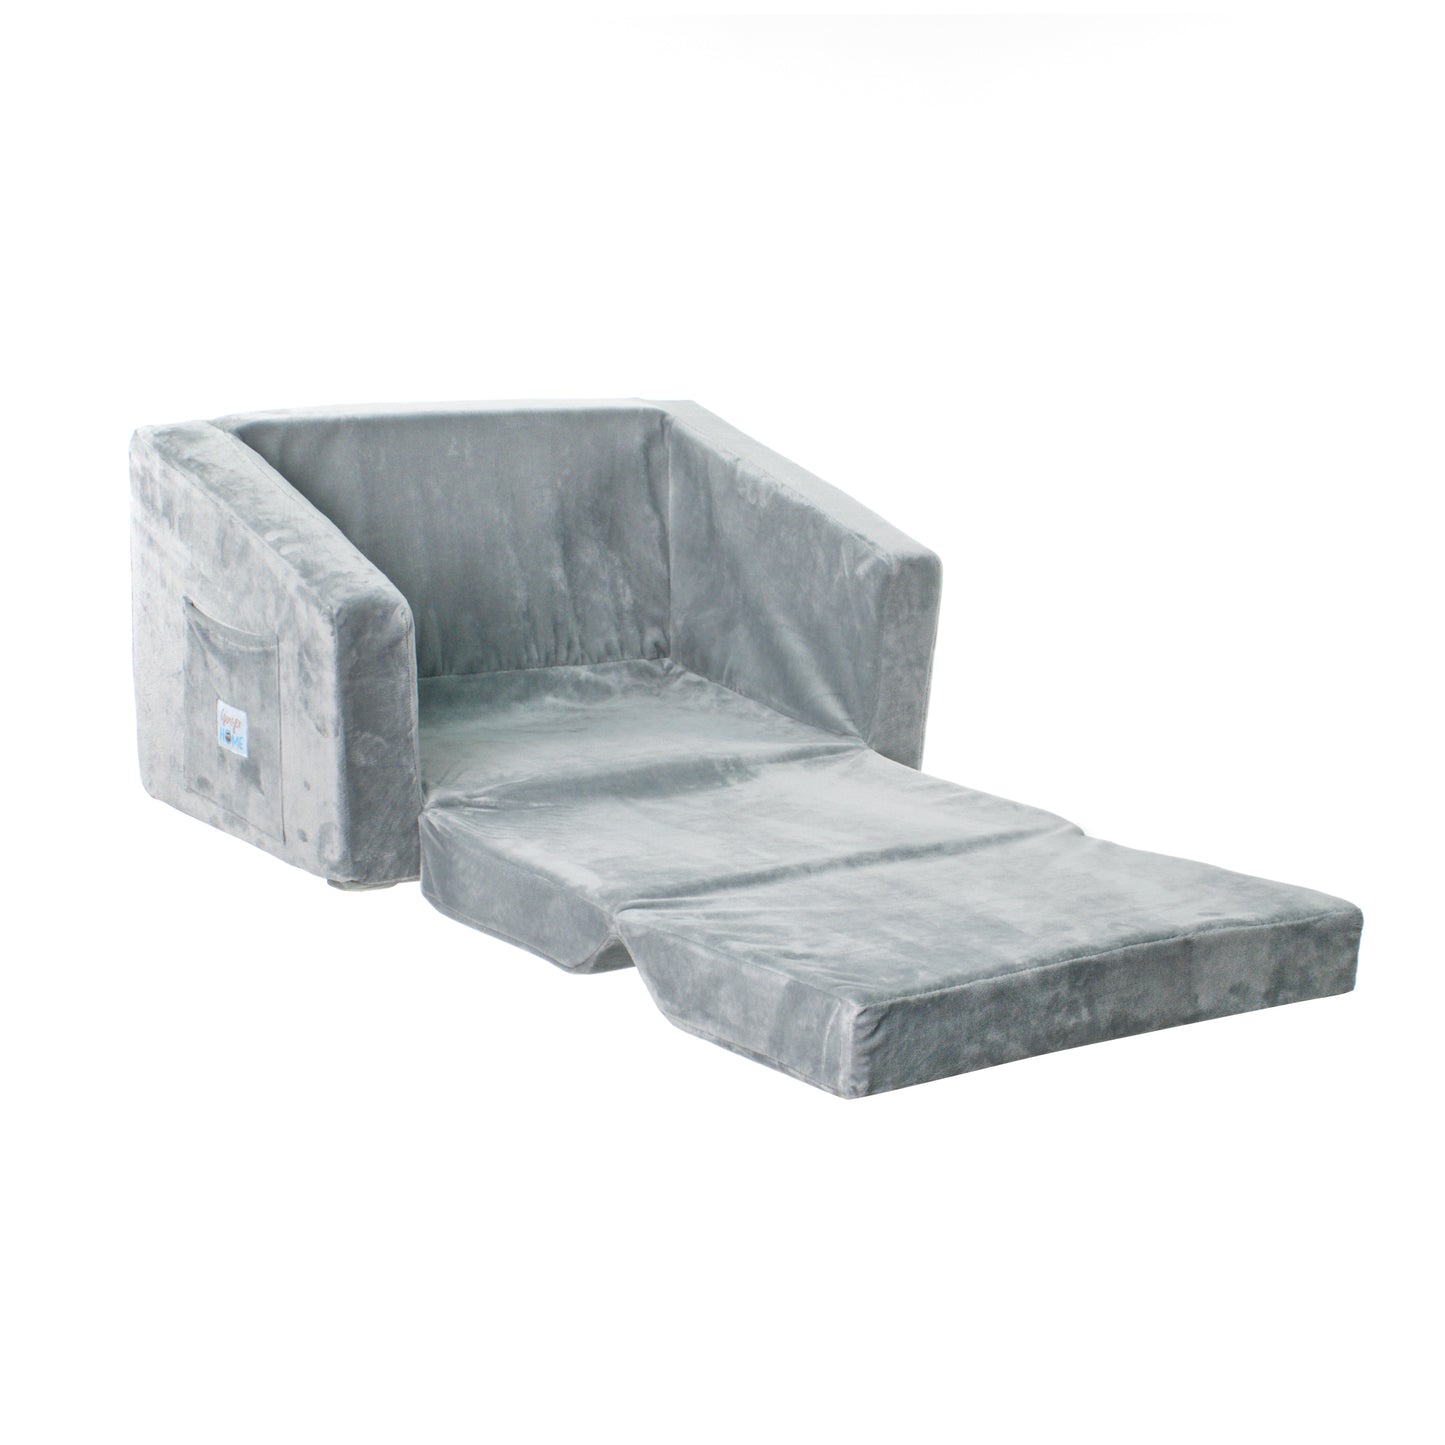 Children's double extendable, soft foam sofa BONO - 2 in 1